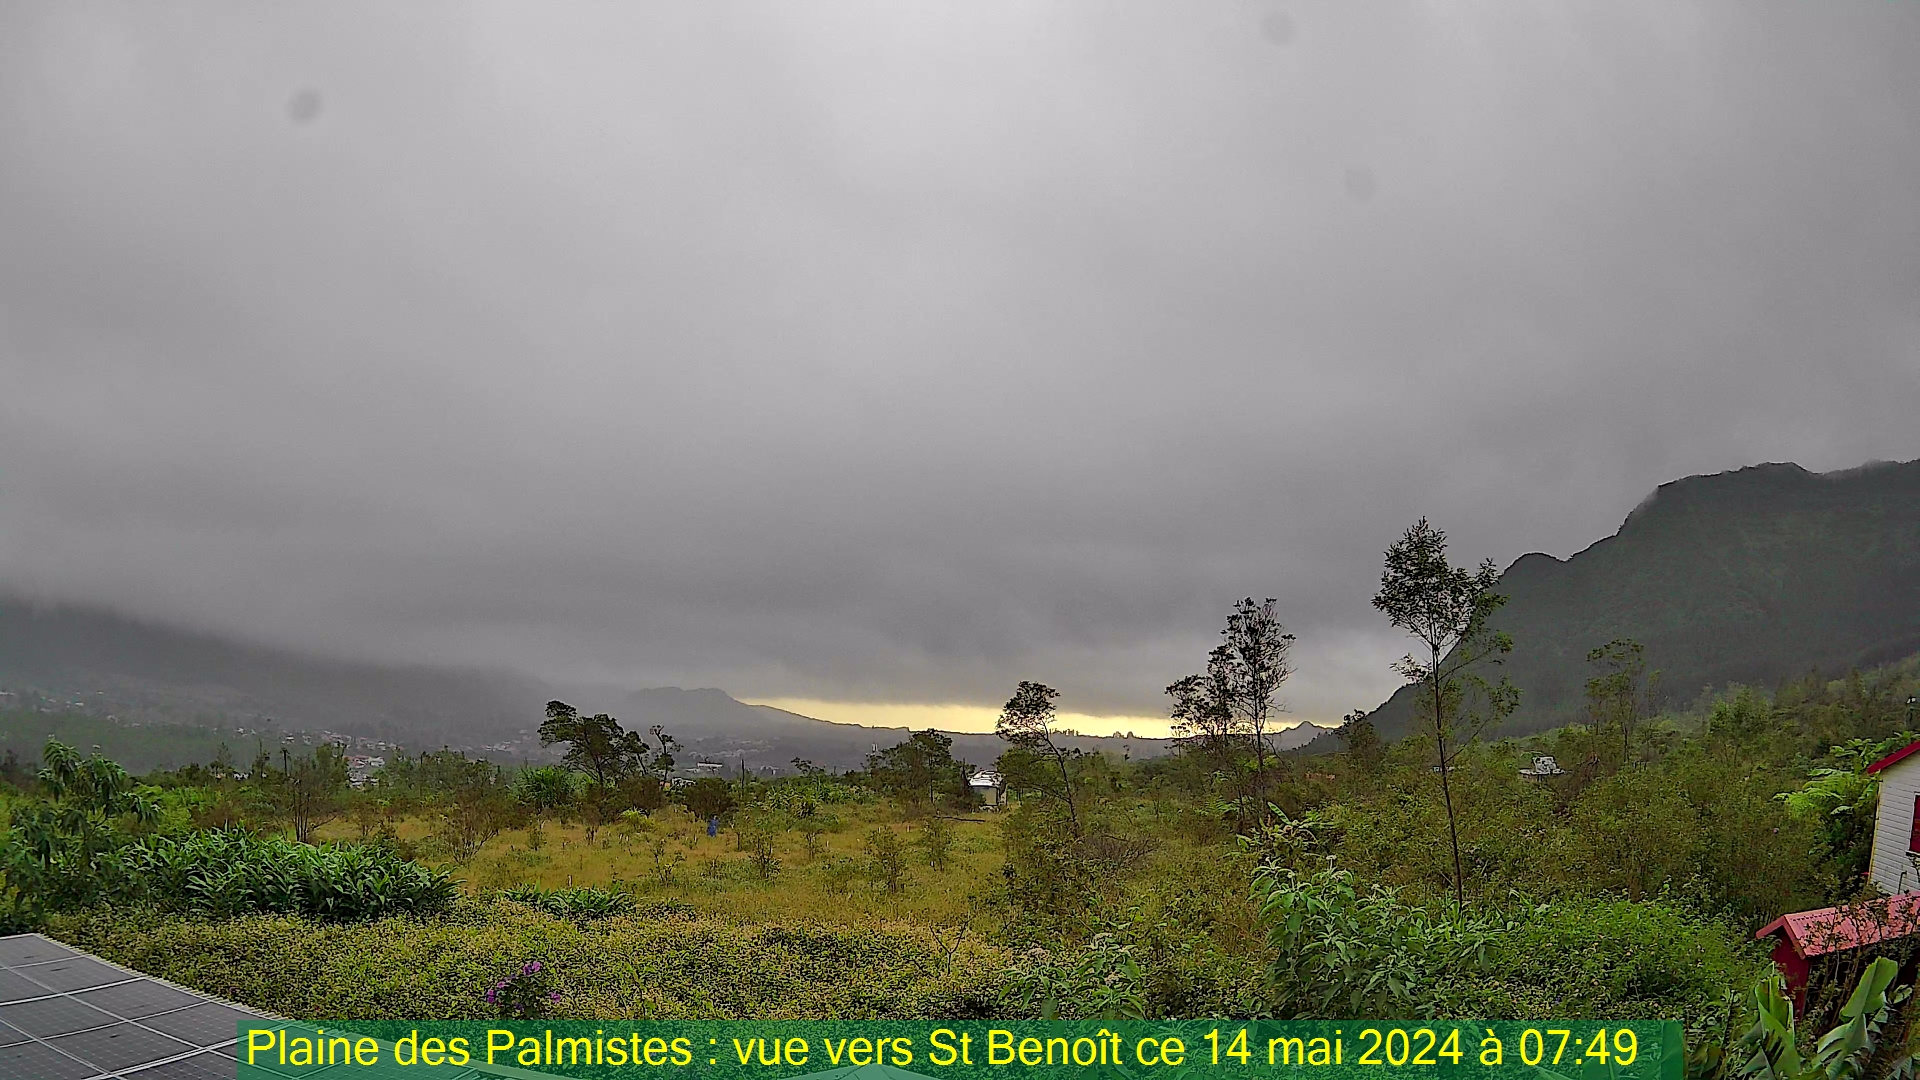 Saint-Denis (Réunion) Do. 07:50